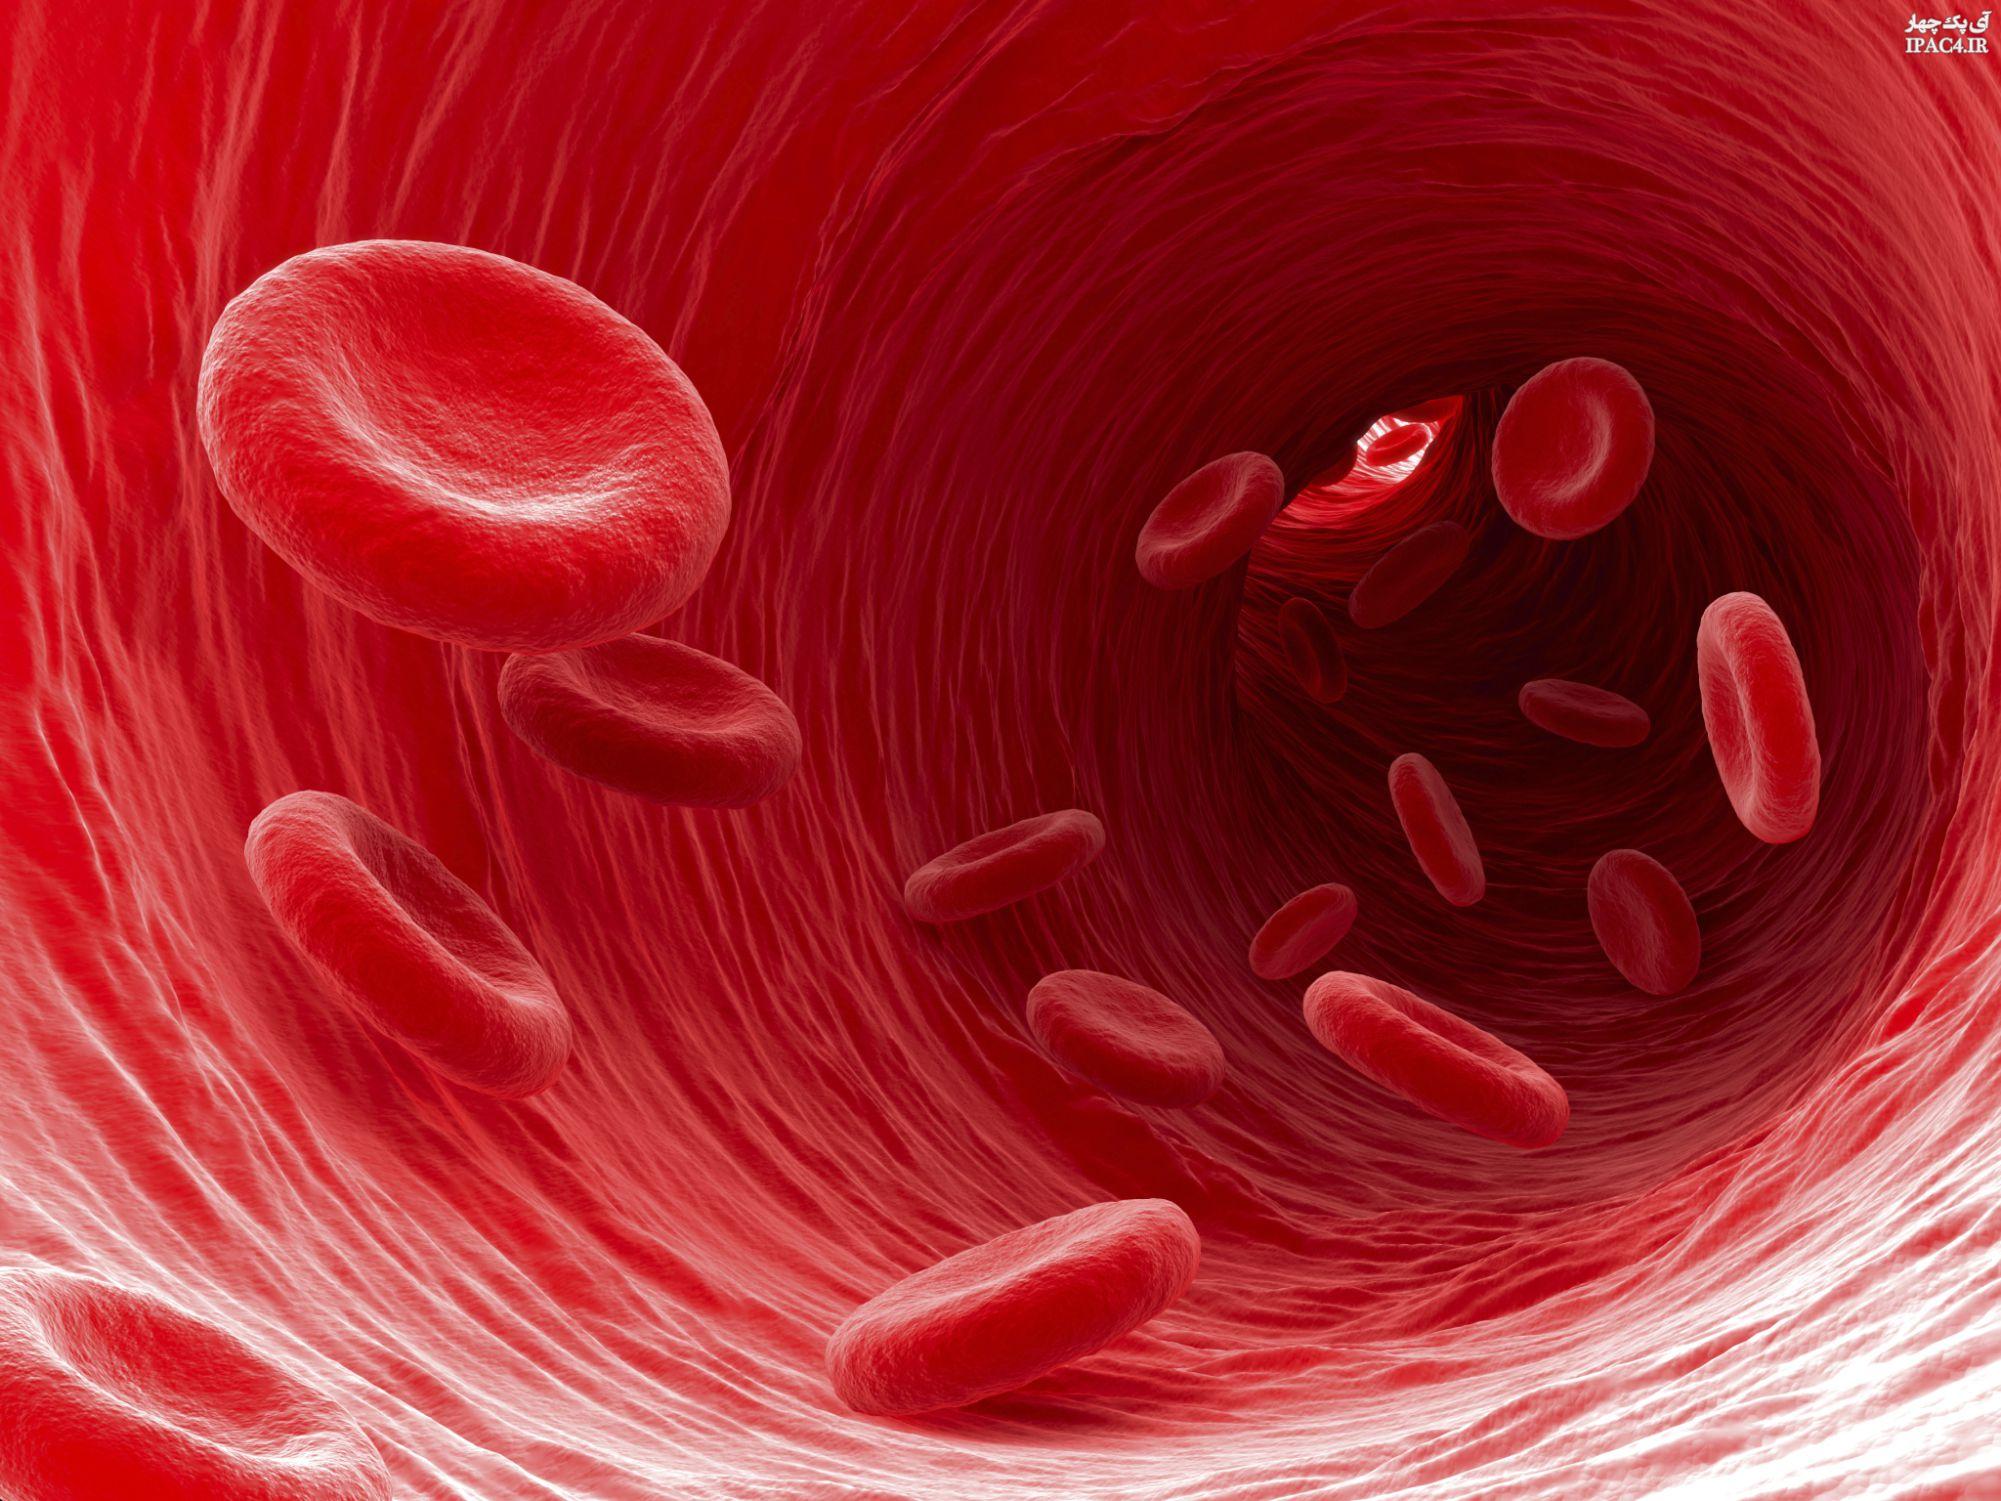 چگونه به کمک طب سنتی کم خونی را درمان کنیم؟